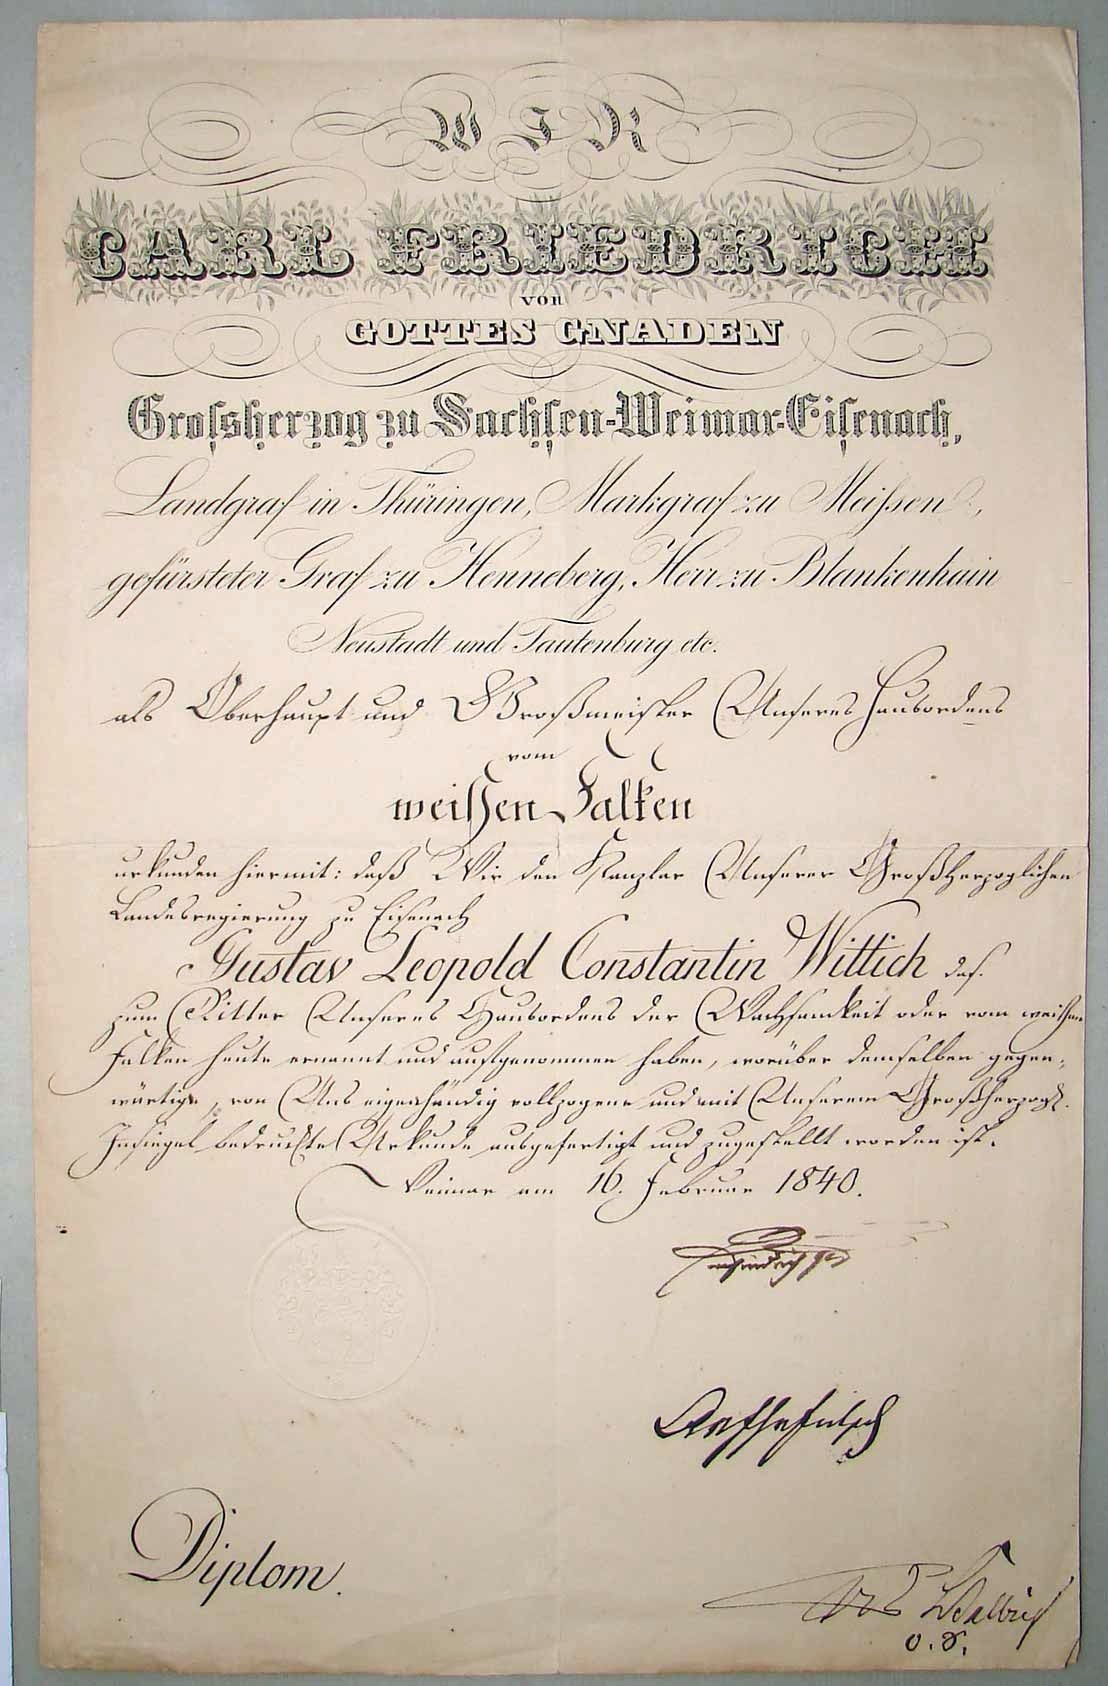 Орден Белого Сокола. Диплом о награждении орденом Белого Сокола Великого Герцога Саксонского Канцлера Густава Виттиха, 1840